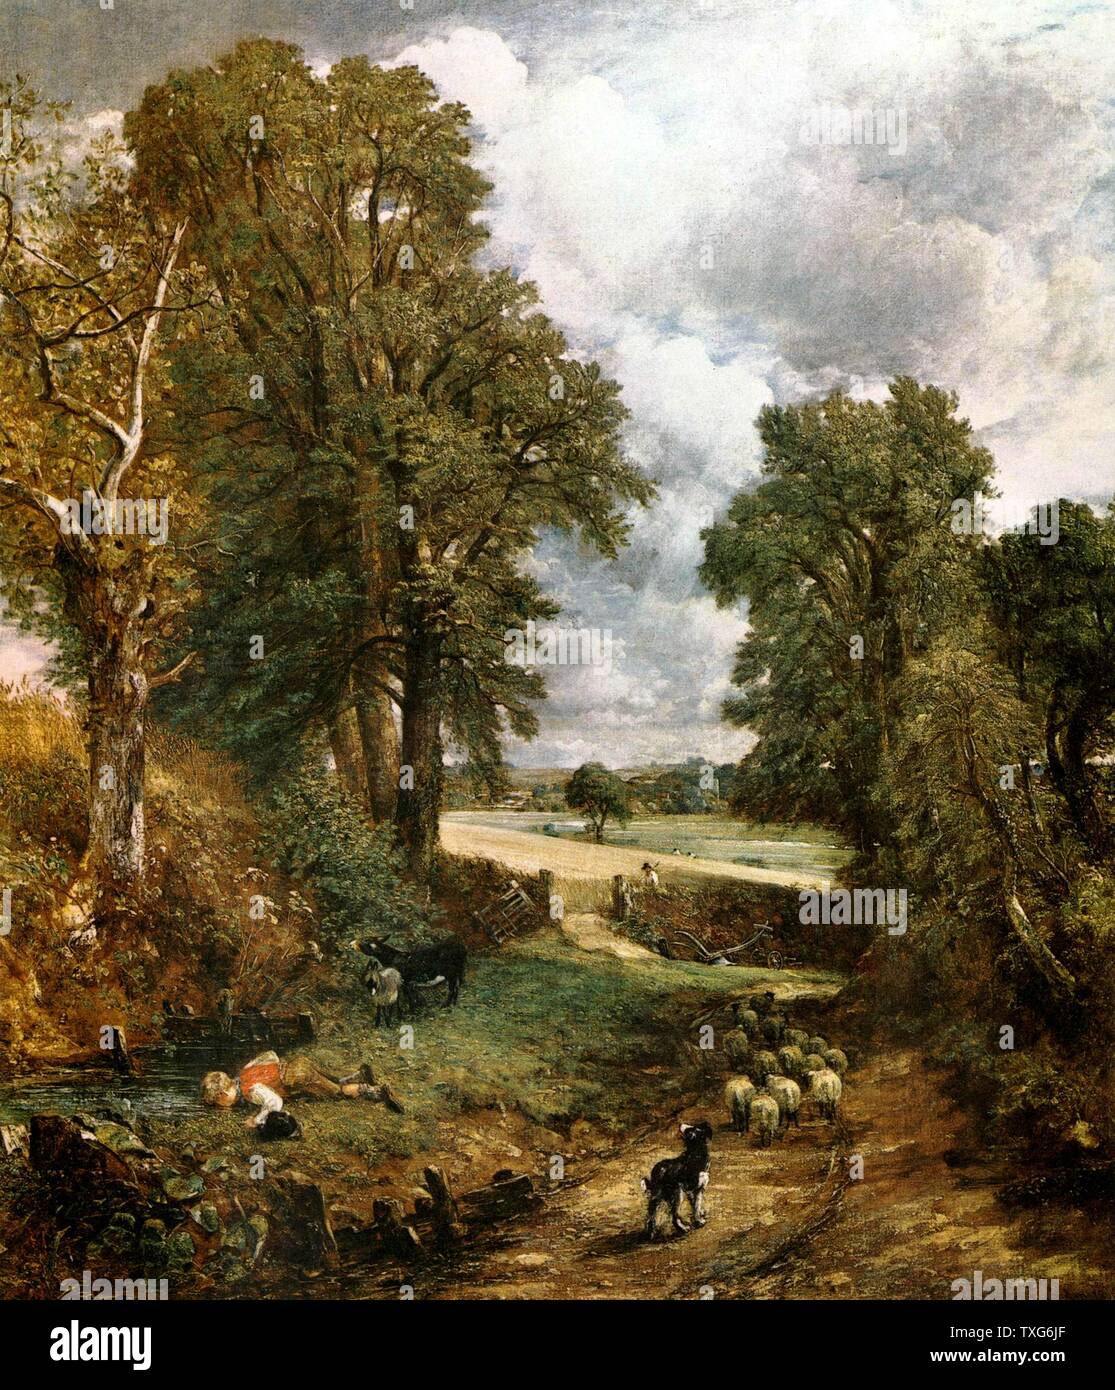 L'anglais John Constable Le cornifield 1826 école Huile sur toile (143 x 122 cm Galerie nationale, Londres) Banque D'Images